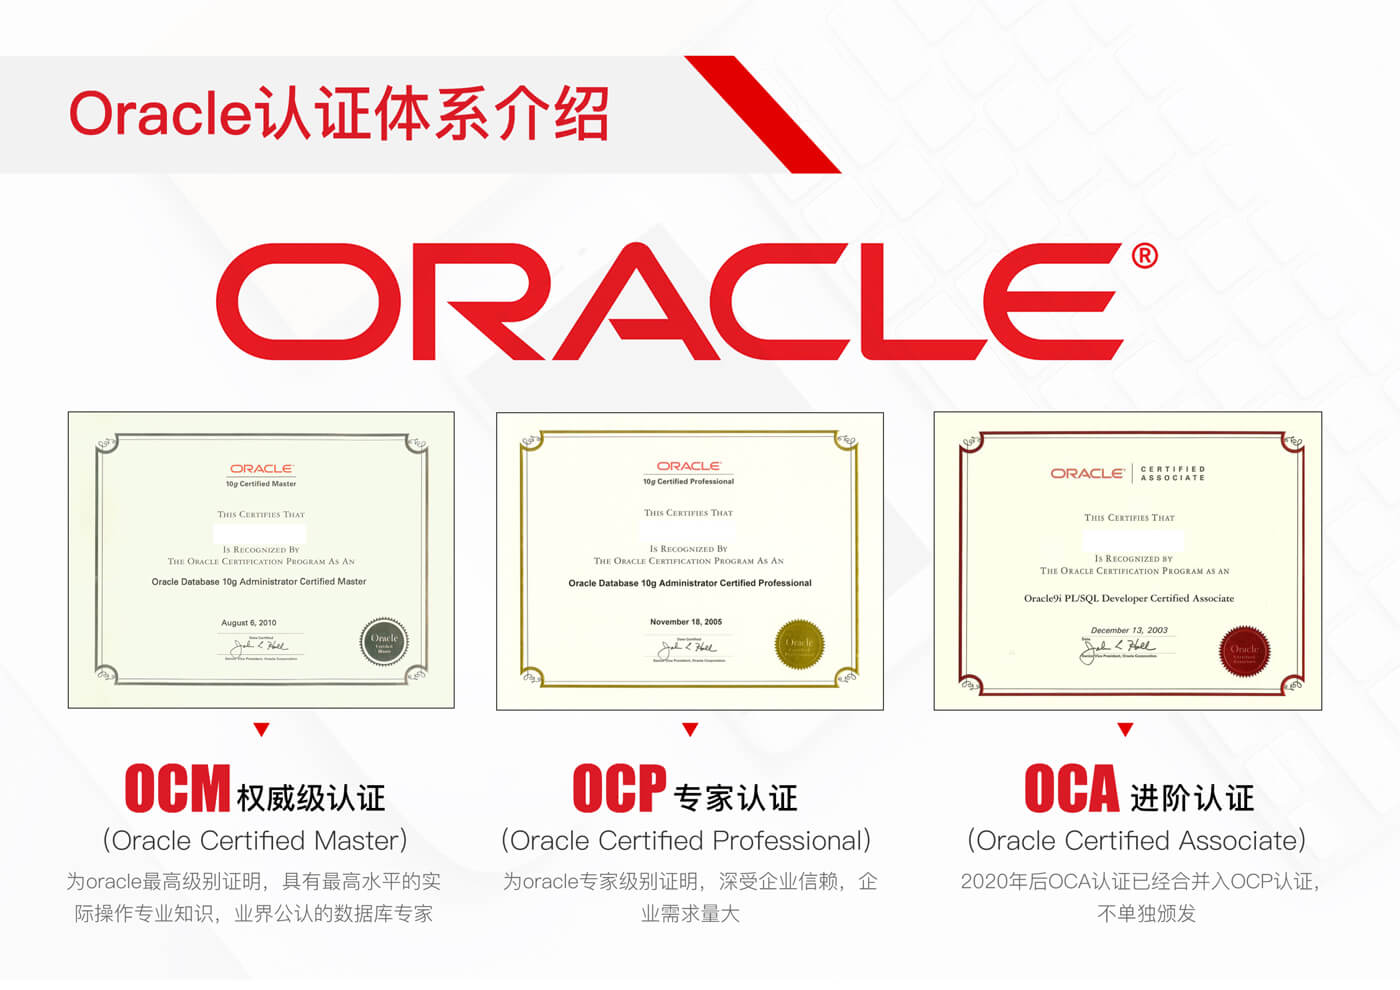 5Oracle认证体系介绍